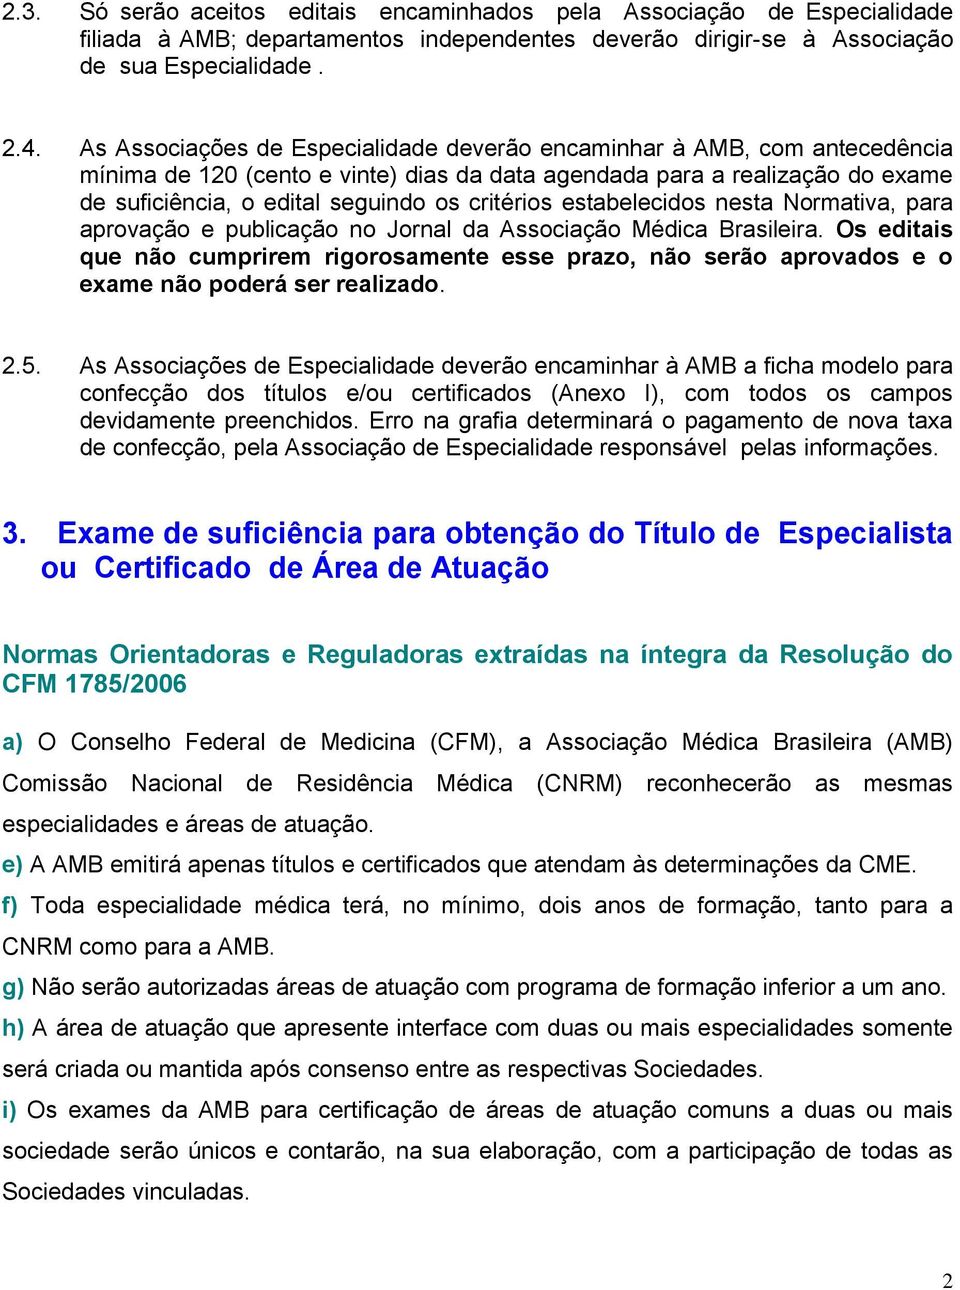 critérios estabelecidos nesta Normativa, para aprovação e publicação no Jornal da Associação Médica Brasileira.